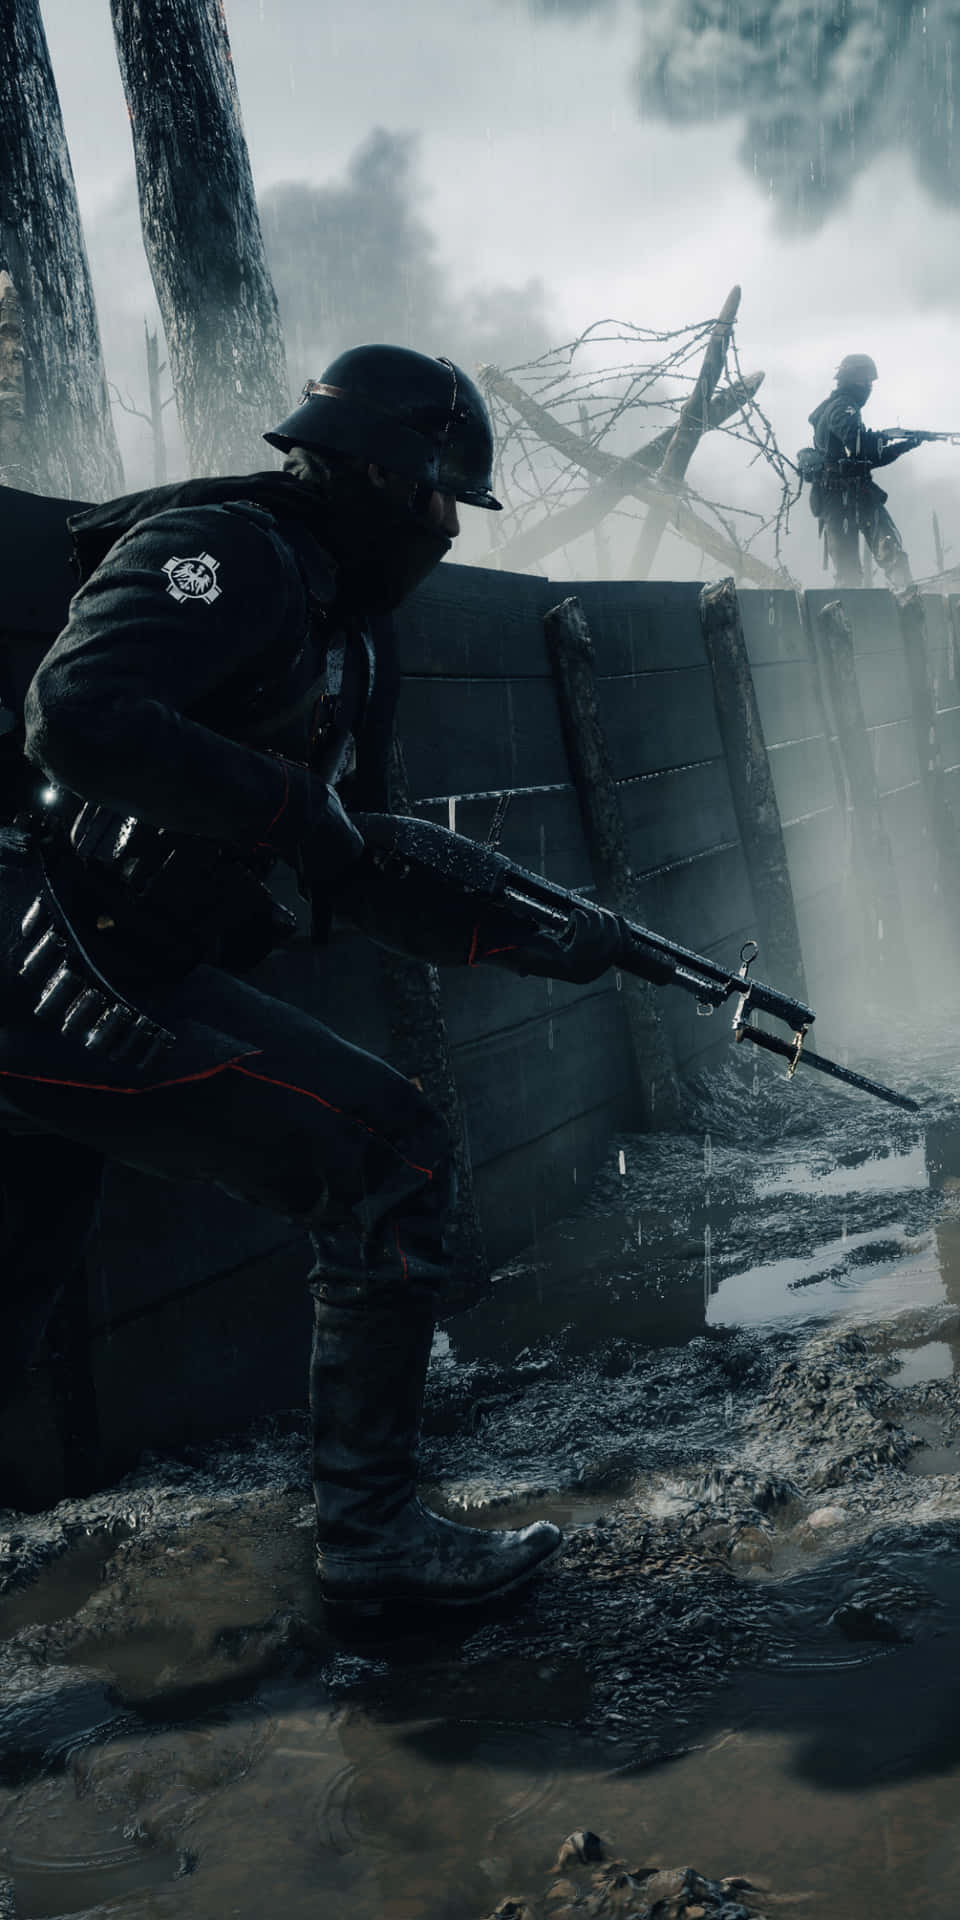 Pixel3xl Bakgrundsbild Från Battlefield 1 Med En Soldat I En Barrikad.